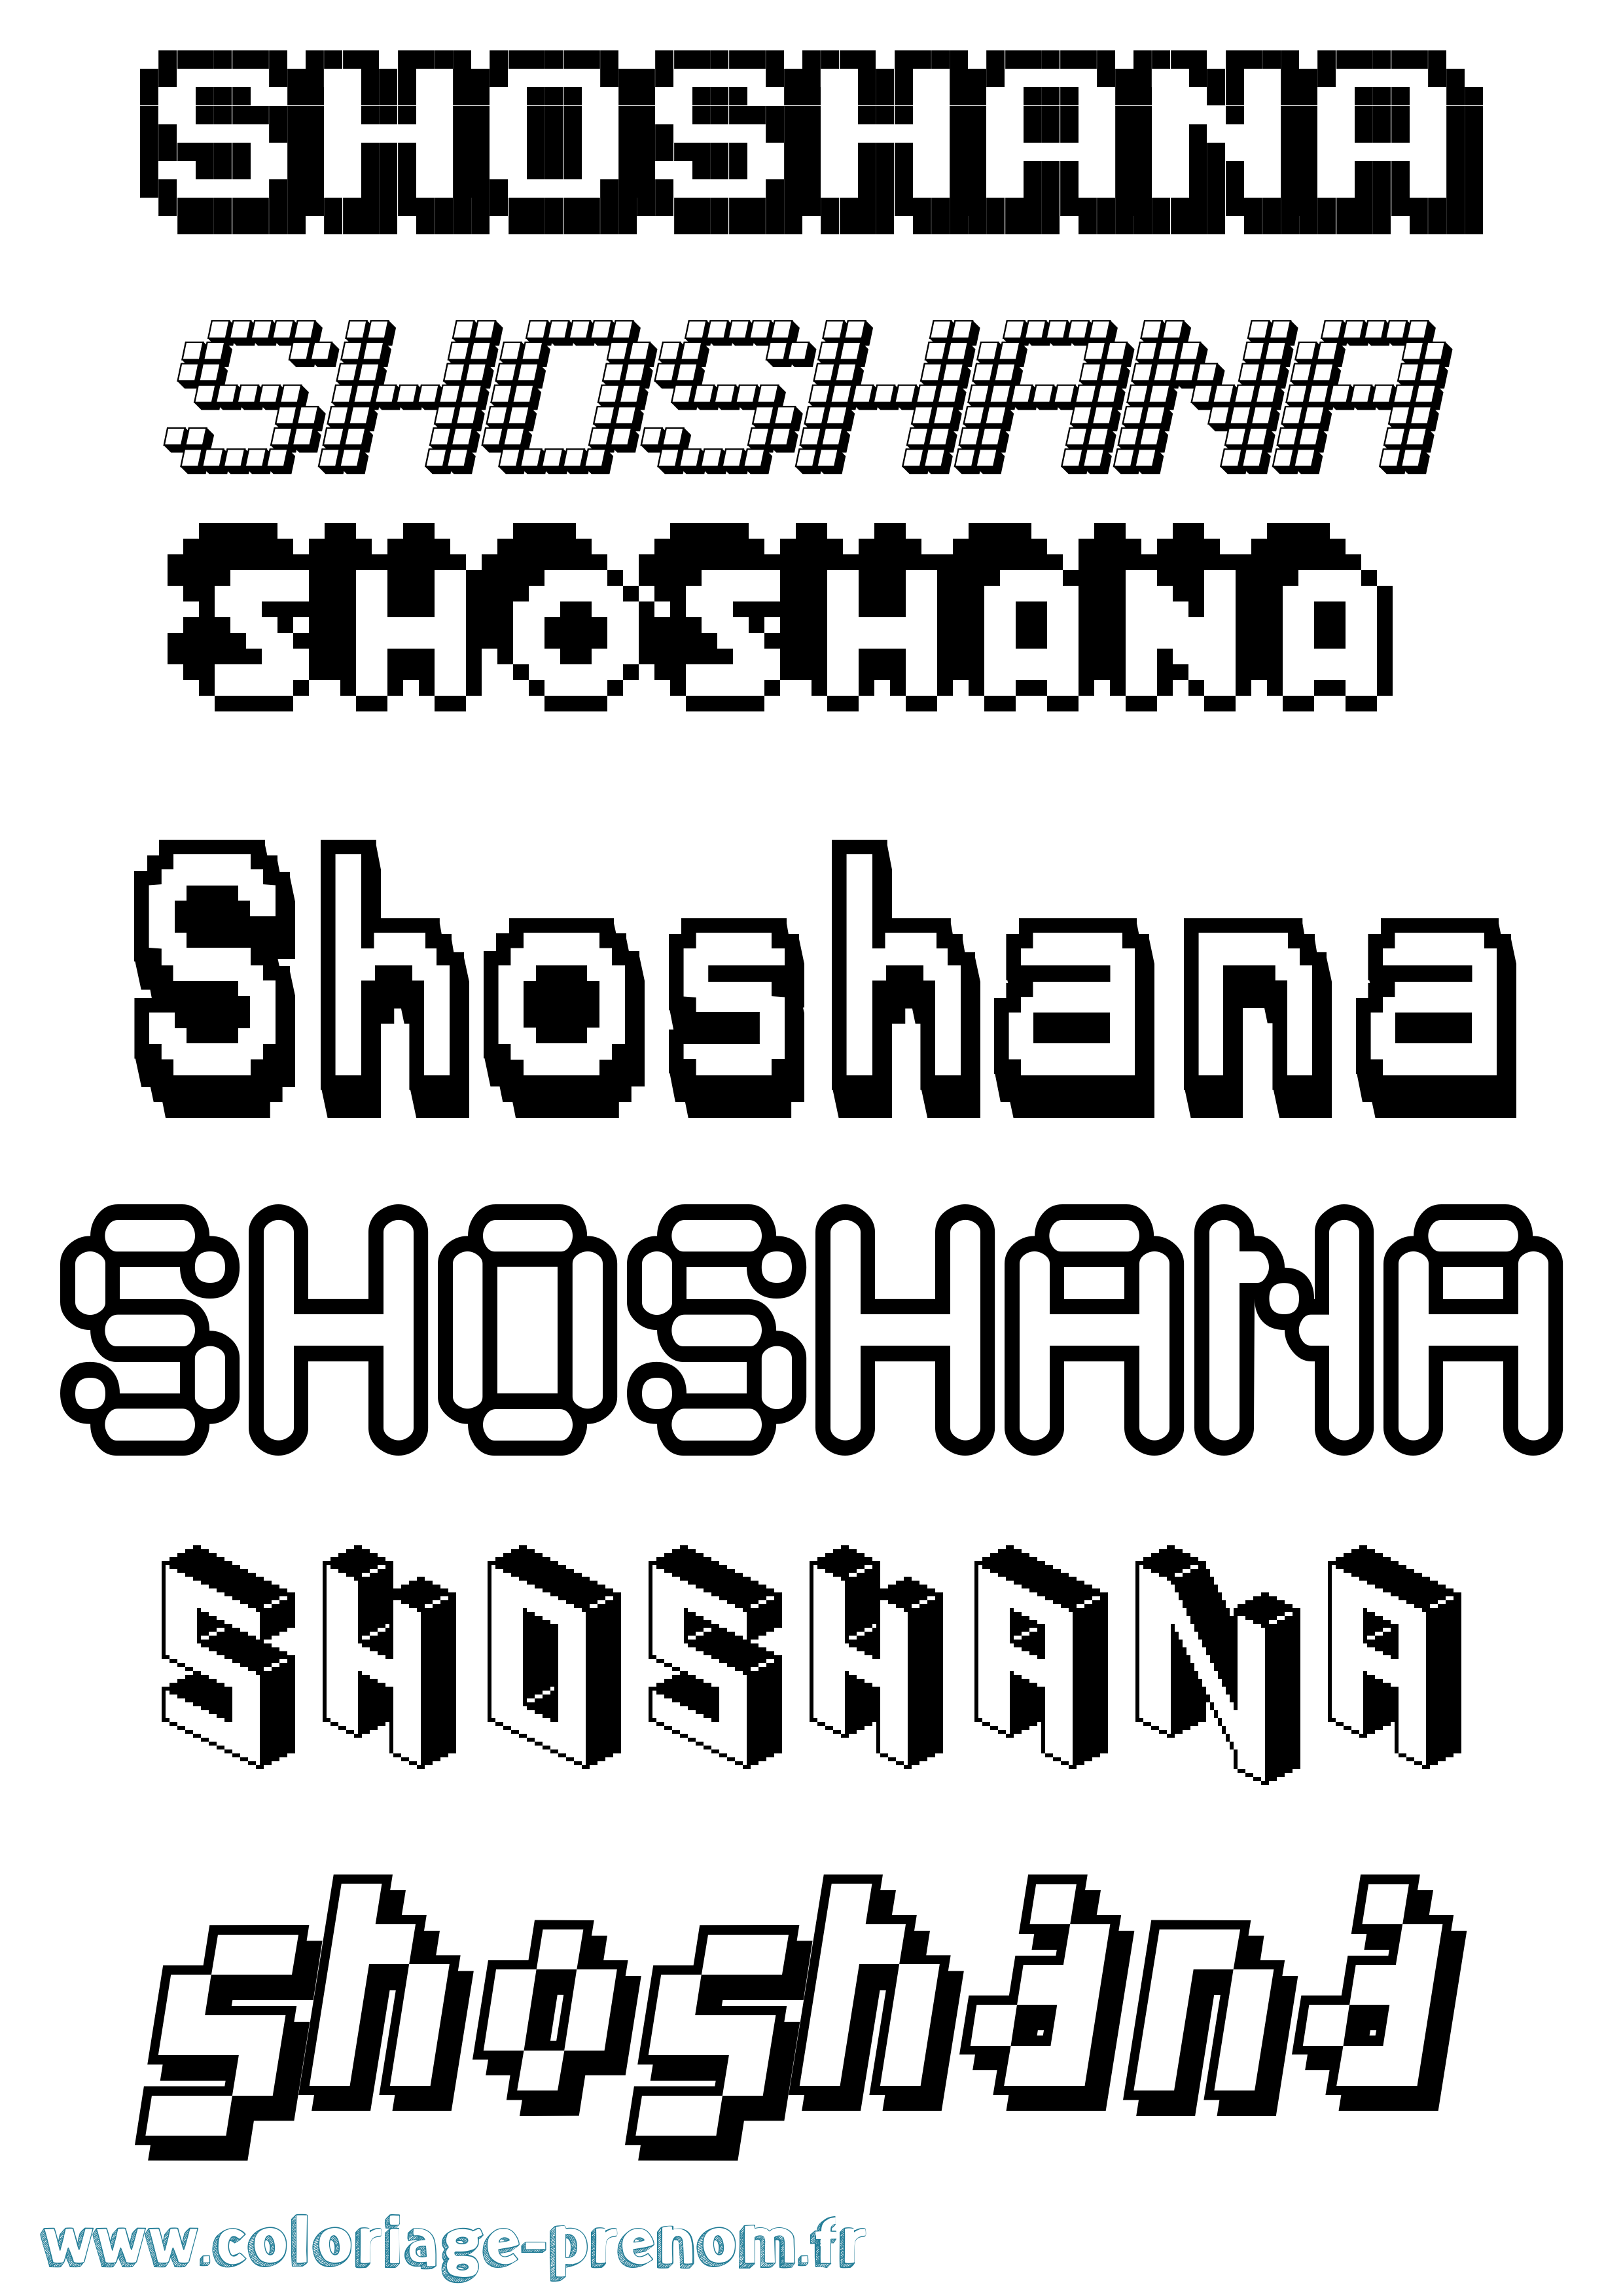 Coloriage prénom Shoshana Pixel